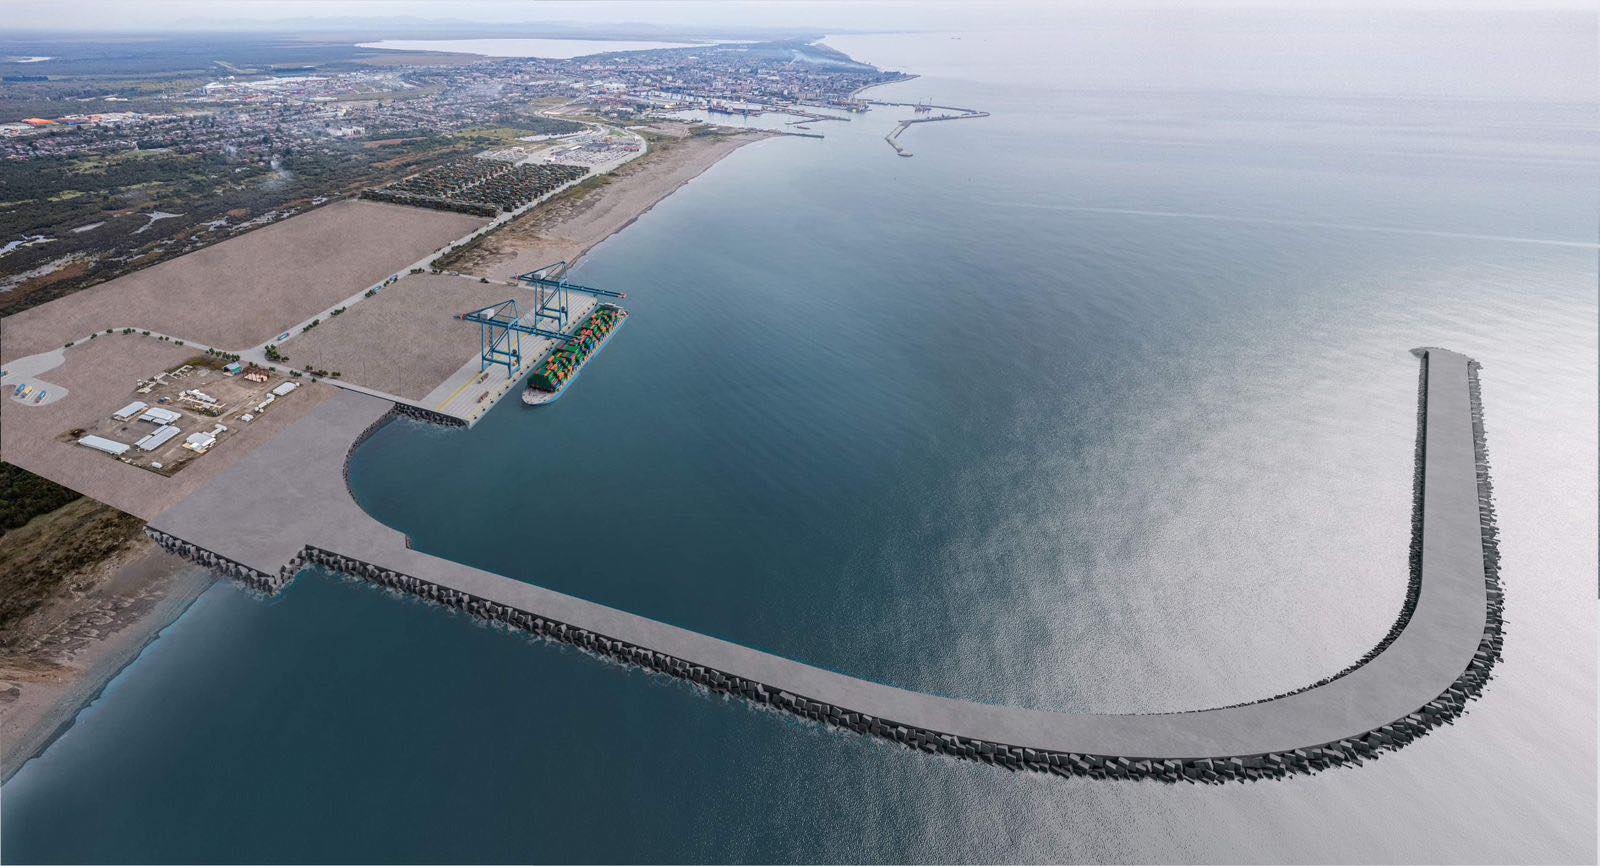 Poti Sea Port expansion